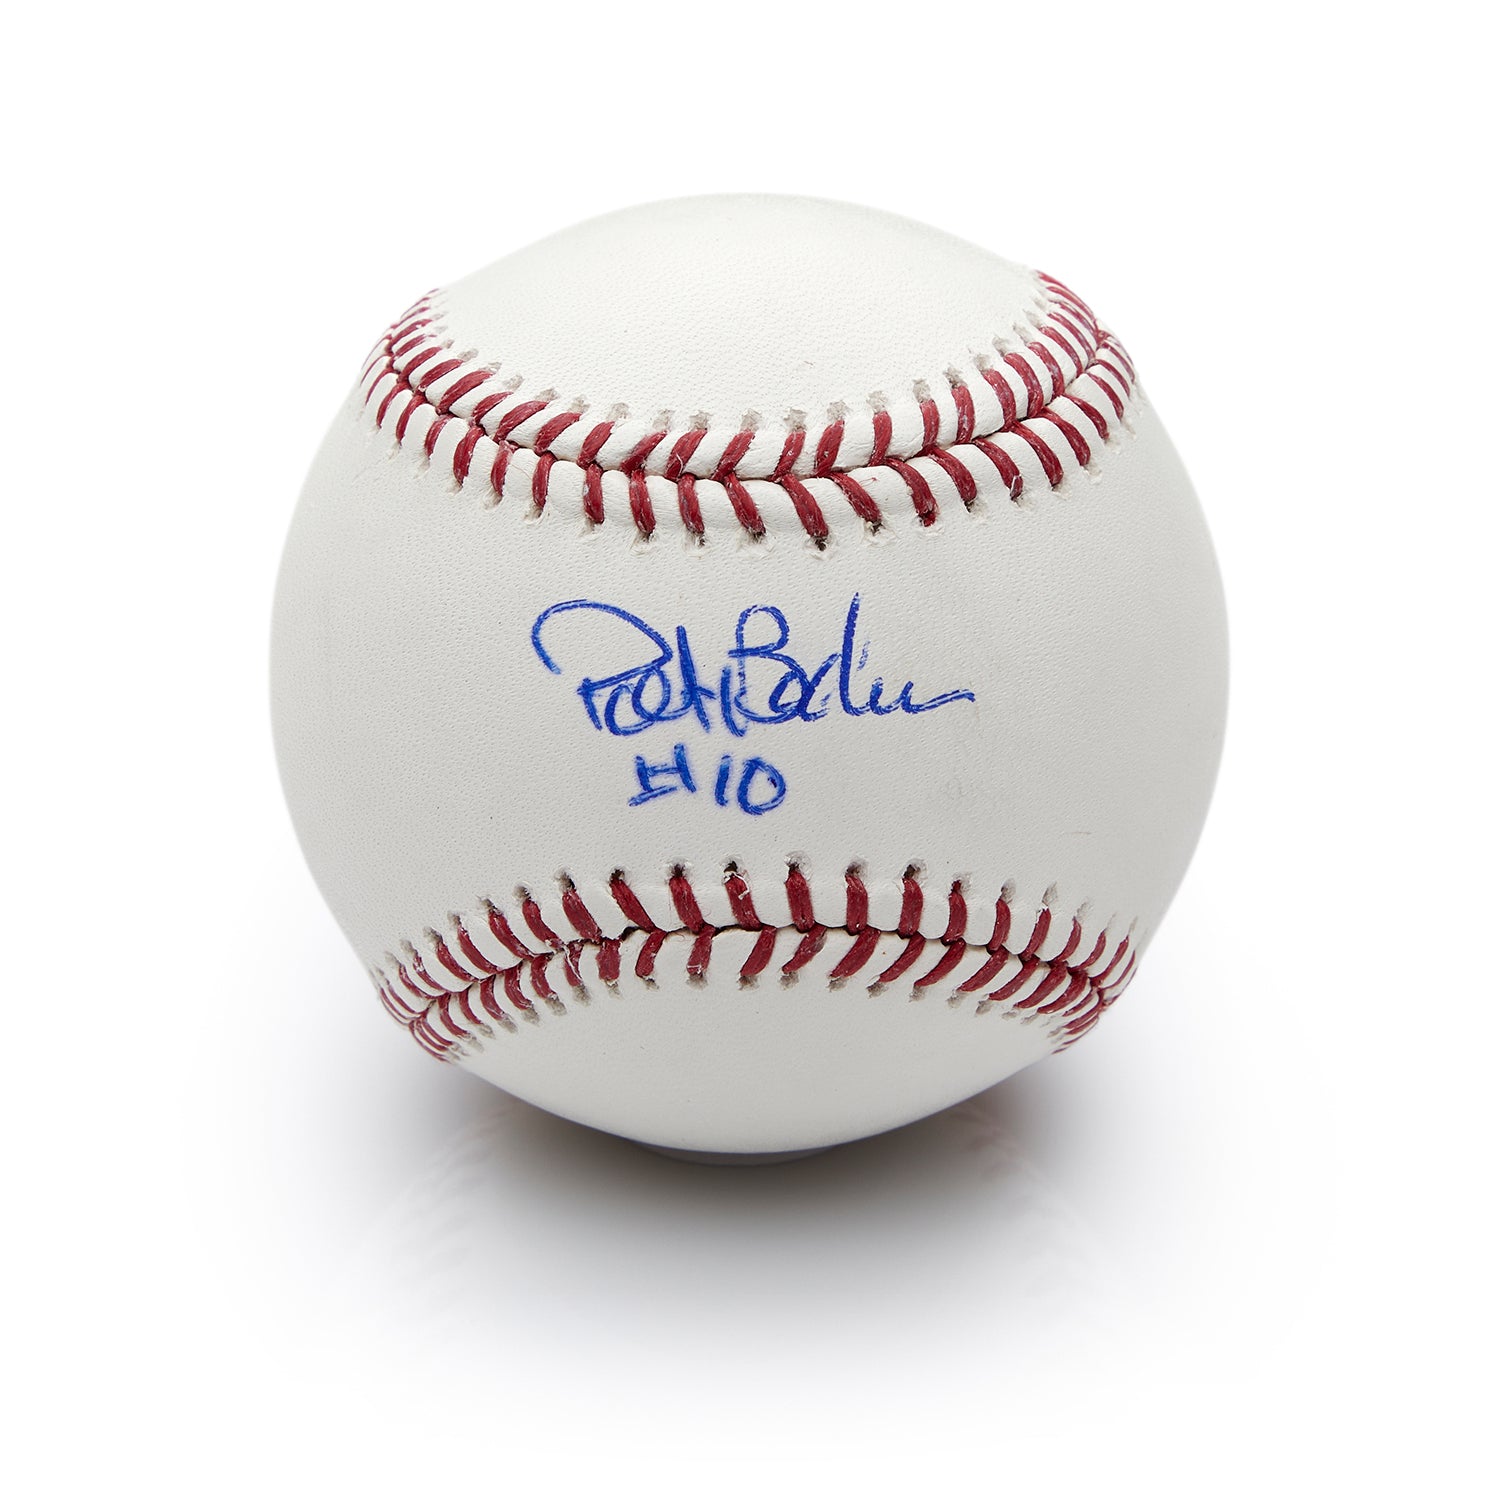 Pat Borders Autographed Official MLB Major League Baseball